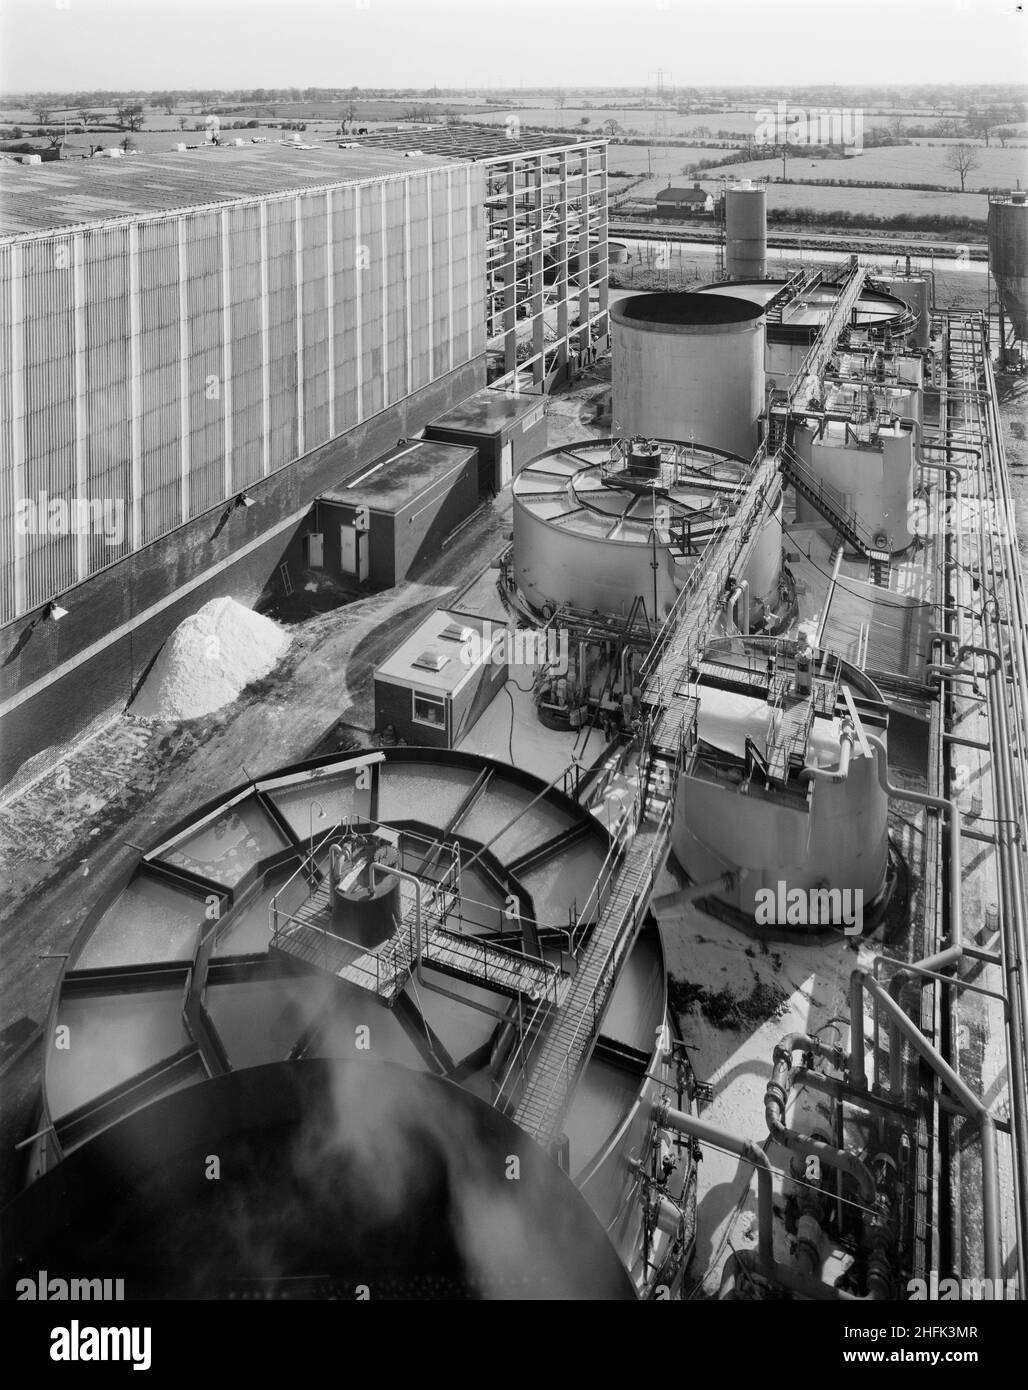 British Salt Factory, Faulkner Lane, Middlewich, Cheshire, 28/04/1971. L'impianto di chiarificazione della salamoia presso la fabbrica britannica di sale. I lavori iniziarono sul posto il 16th aprile 1968 e furono completati all'inizio di giugno 1969 con la fabbrica ufficialmente aperta dal Duca di Edimburgo il 25th. È stato il primo impianto di trattamento delle acque industriali completato nel Regno Unito ad utilizzare un sistema sviluppato dalla società partner francese di Laing, Degremont. Questa fotografia è stata utilizzata nel numero di dicembre 1971 di Team Spirit, la newsletter della Laing Company. Foto Stock